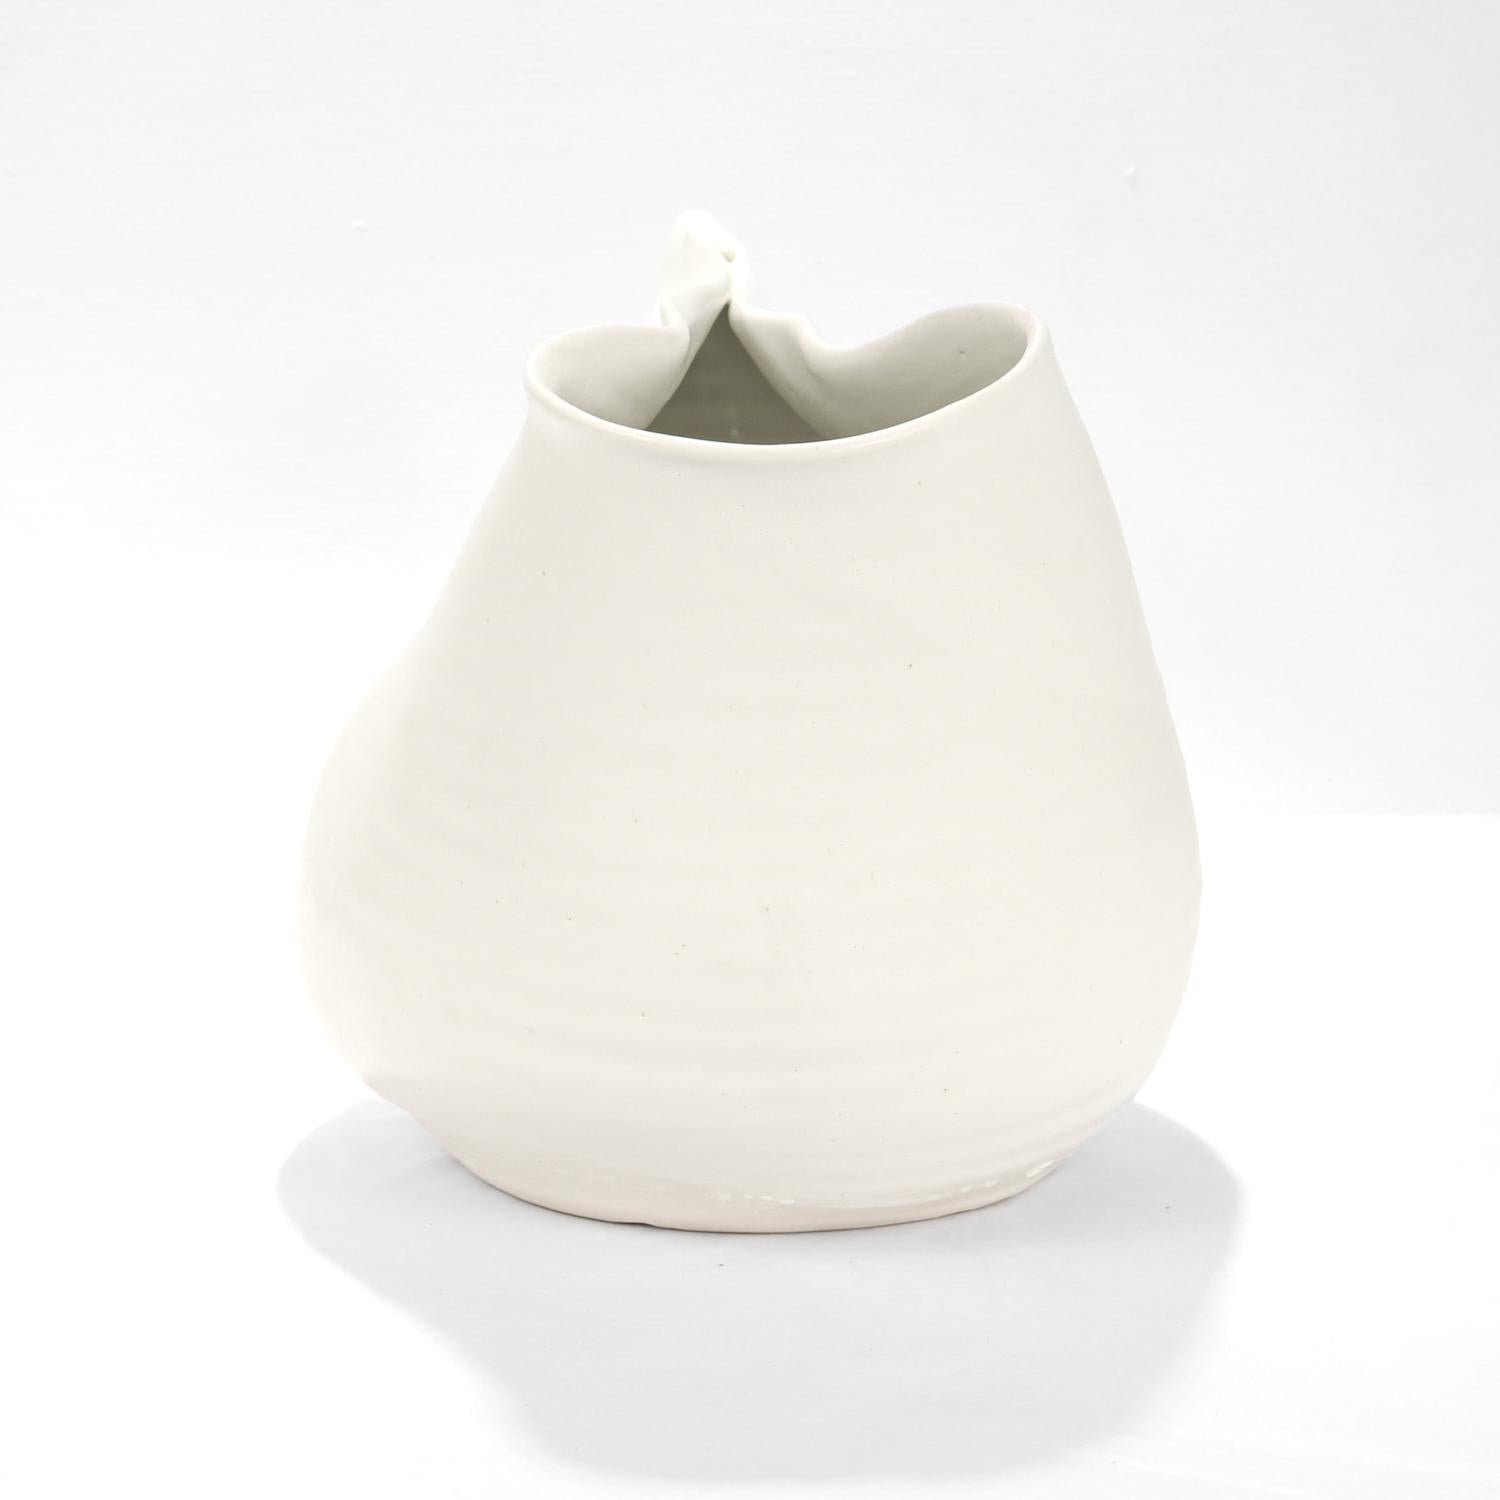 Modern Donna Karan Lenox Signed Limited Edition Embrace Porcelain Vase / Vessel For Sale